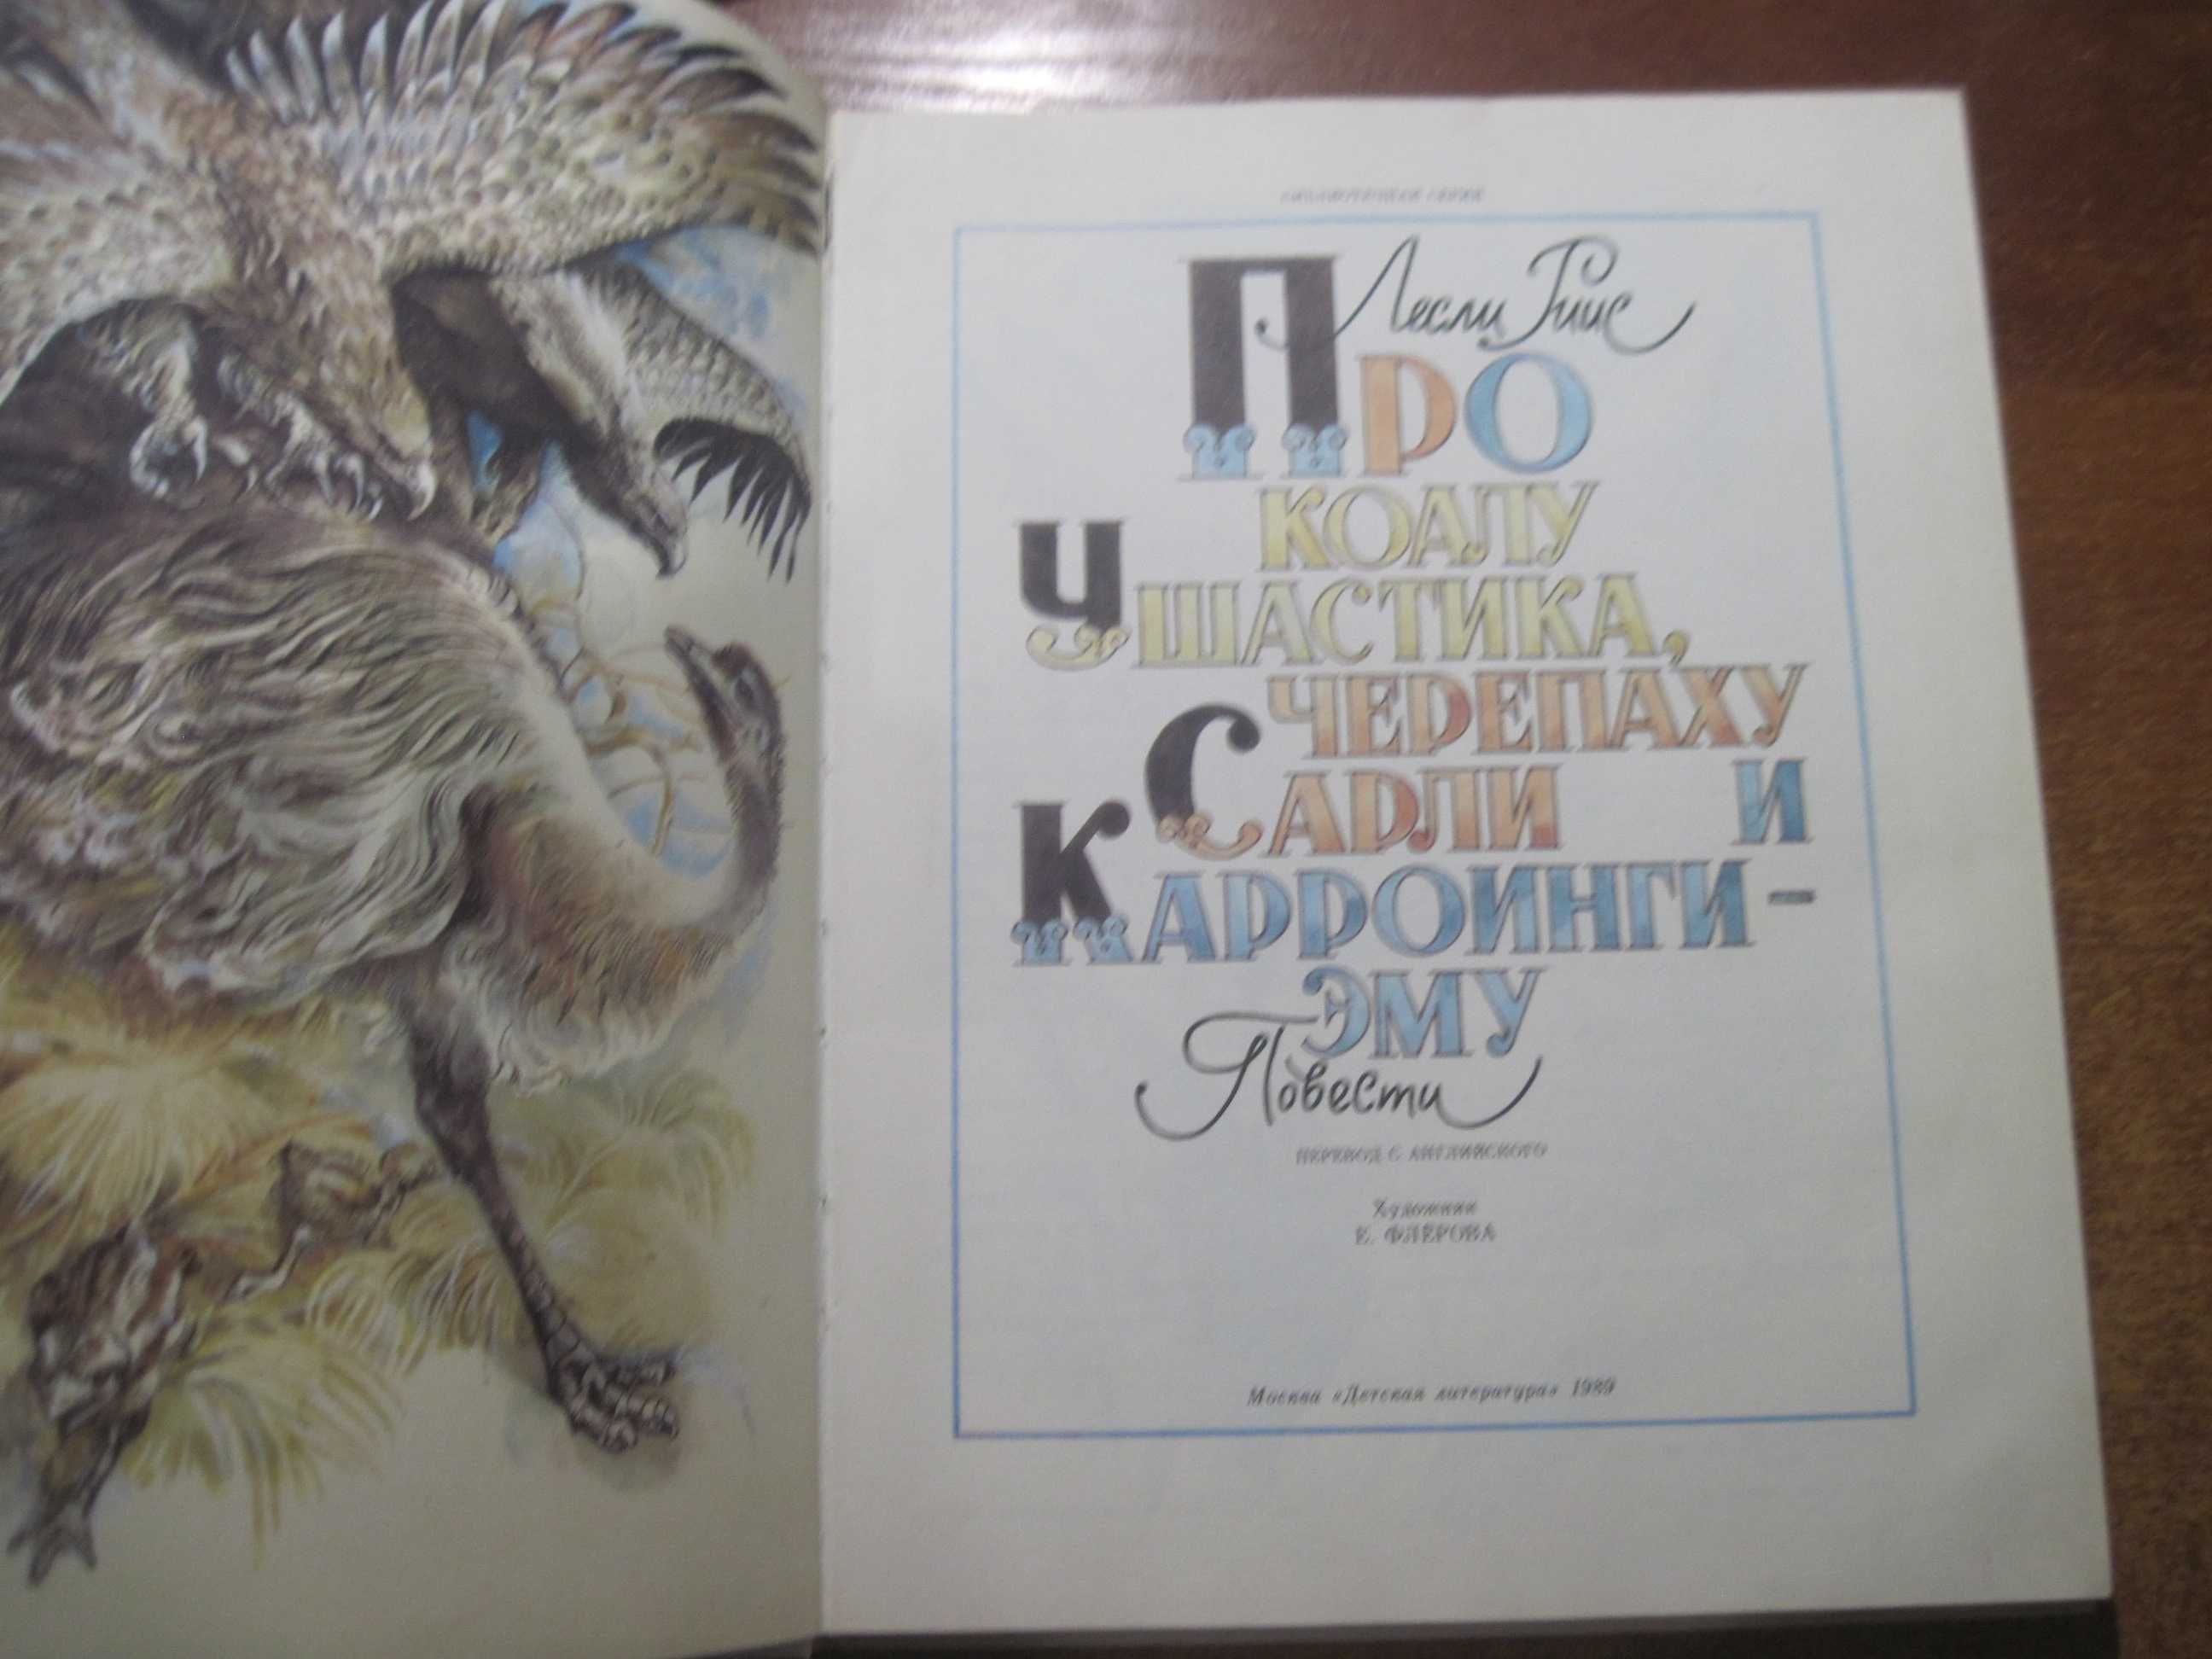 Риис Лесли. Про коалу Ушастика, черепаху Сарли и Карроинги Эму 1989